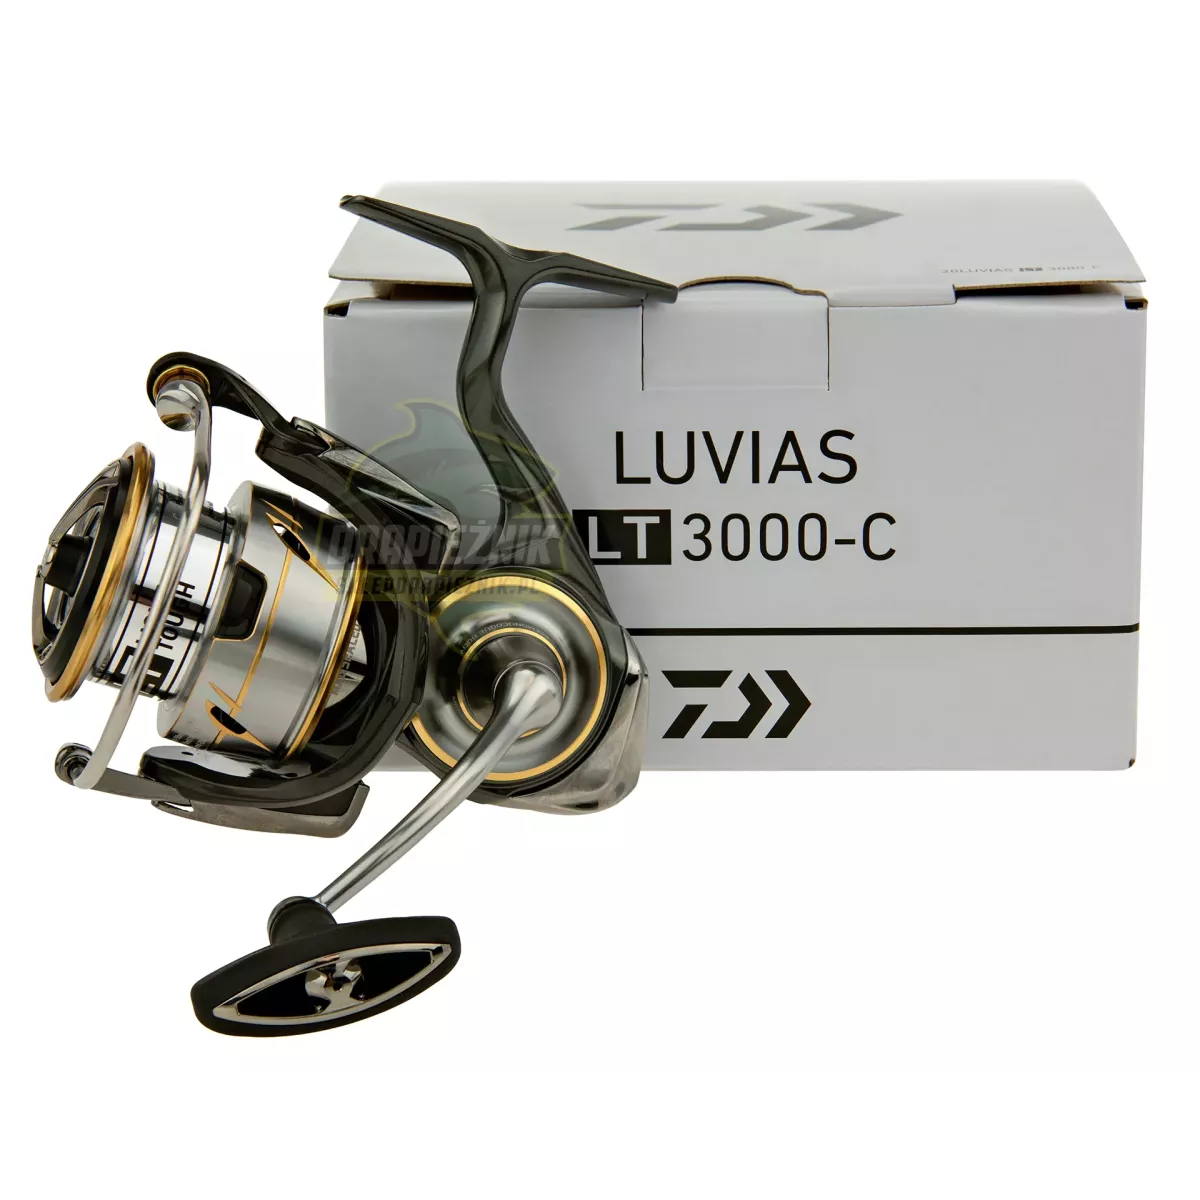 Kołowrotek Daiwa 20 Luvias LT 3000-C